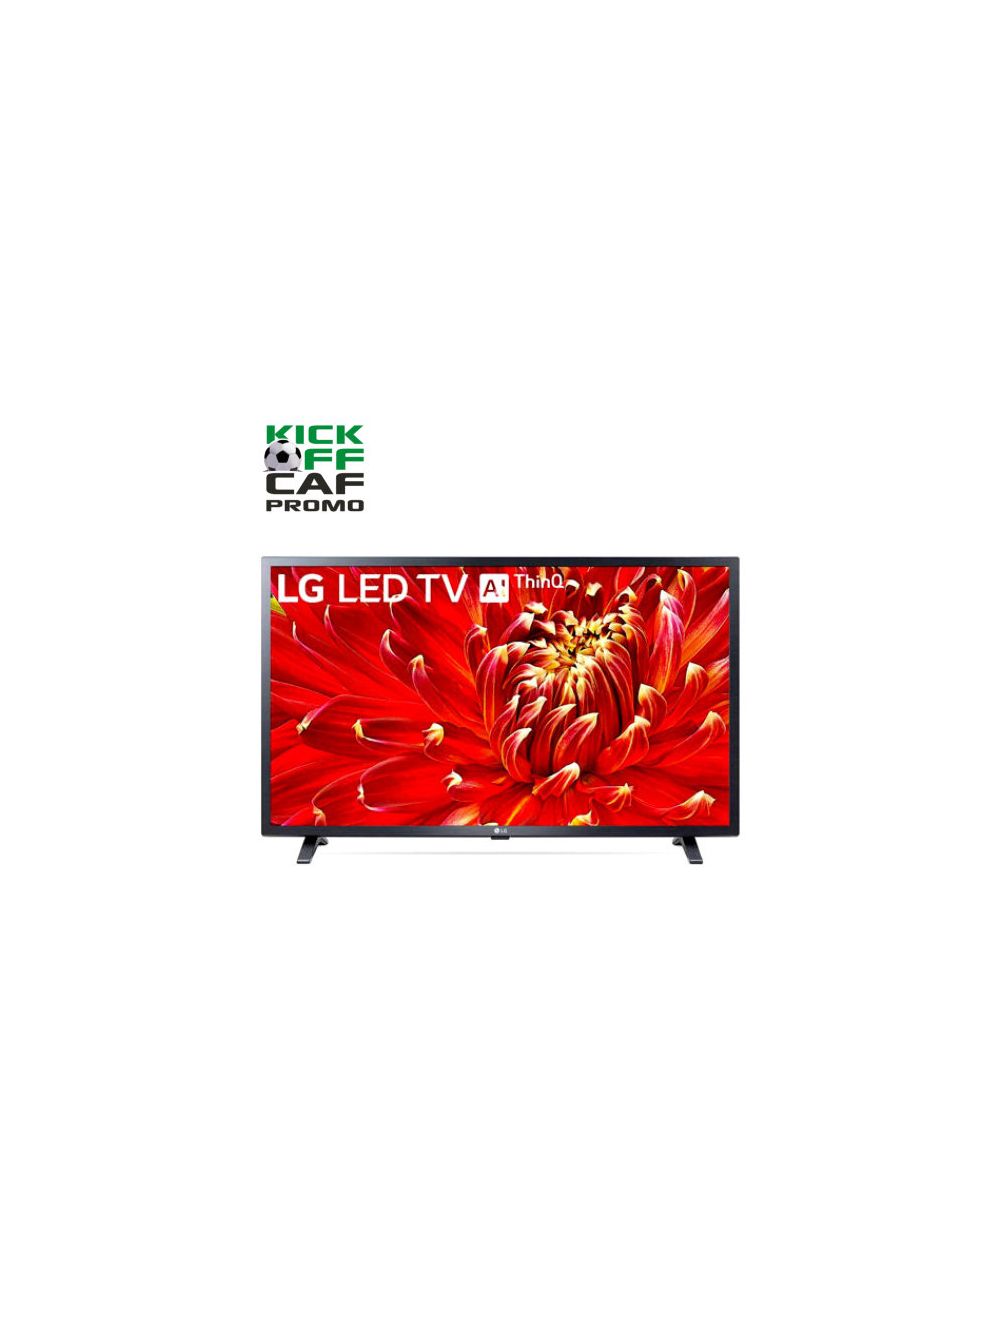 LG TV LED Full HD Smart TV 32 - 32LM6300PLA